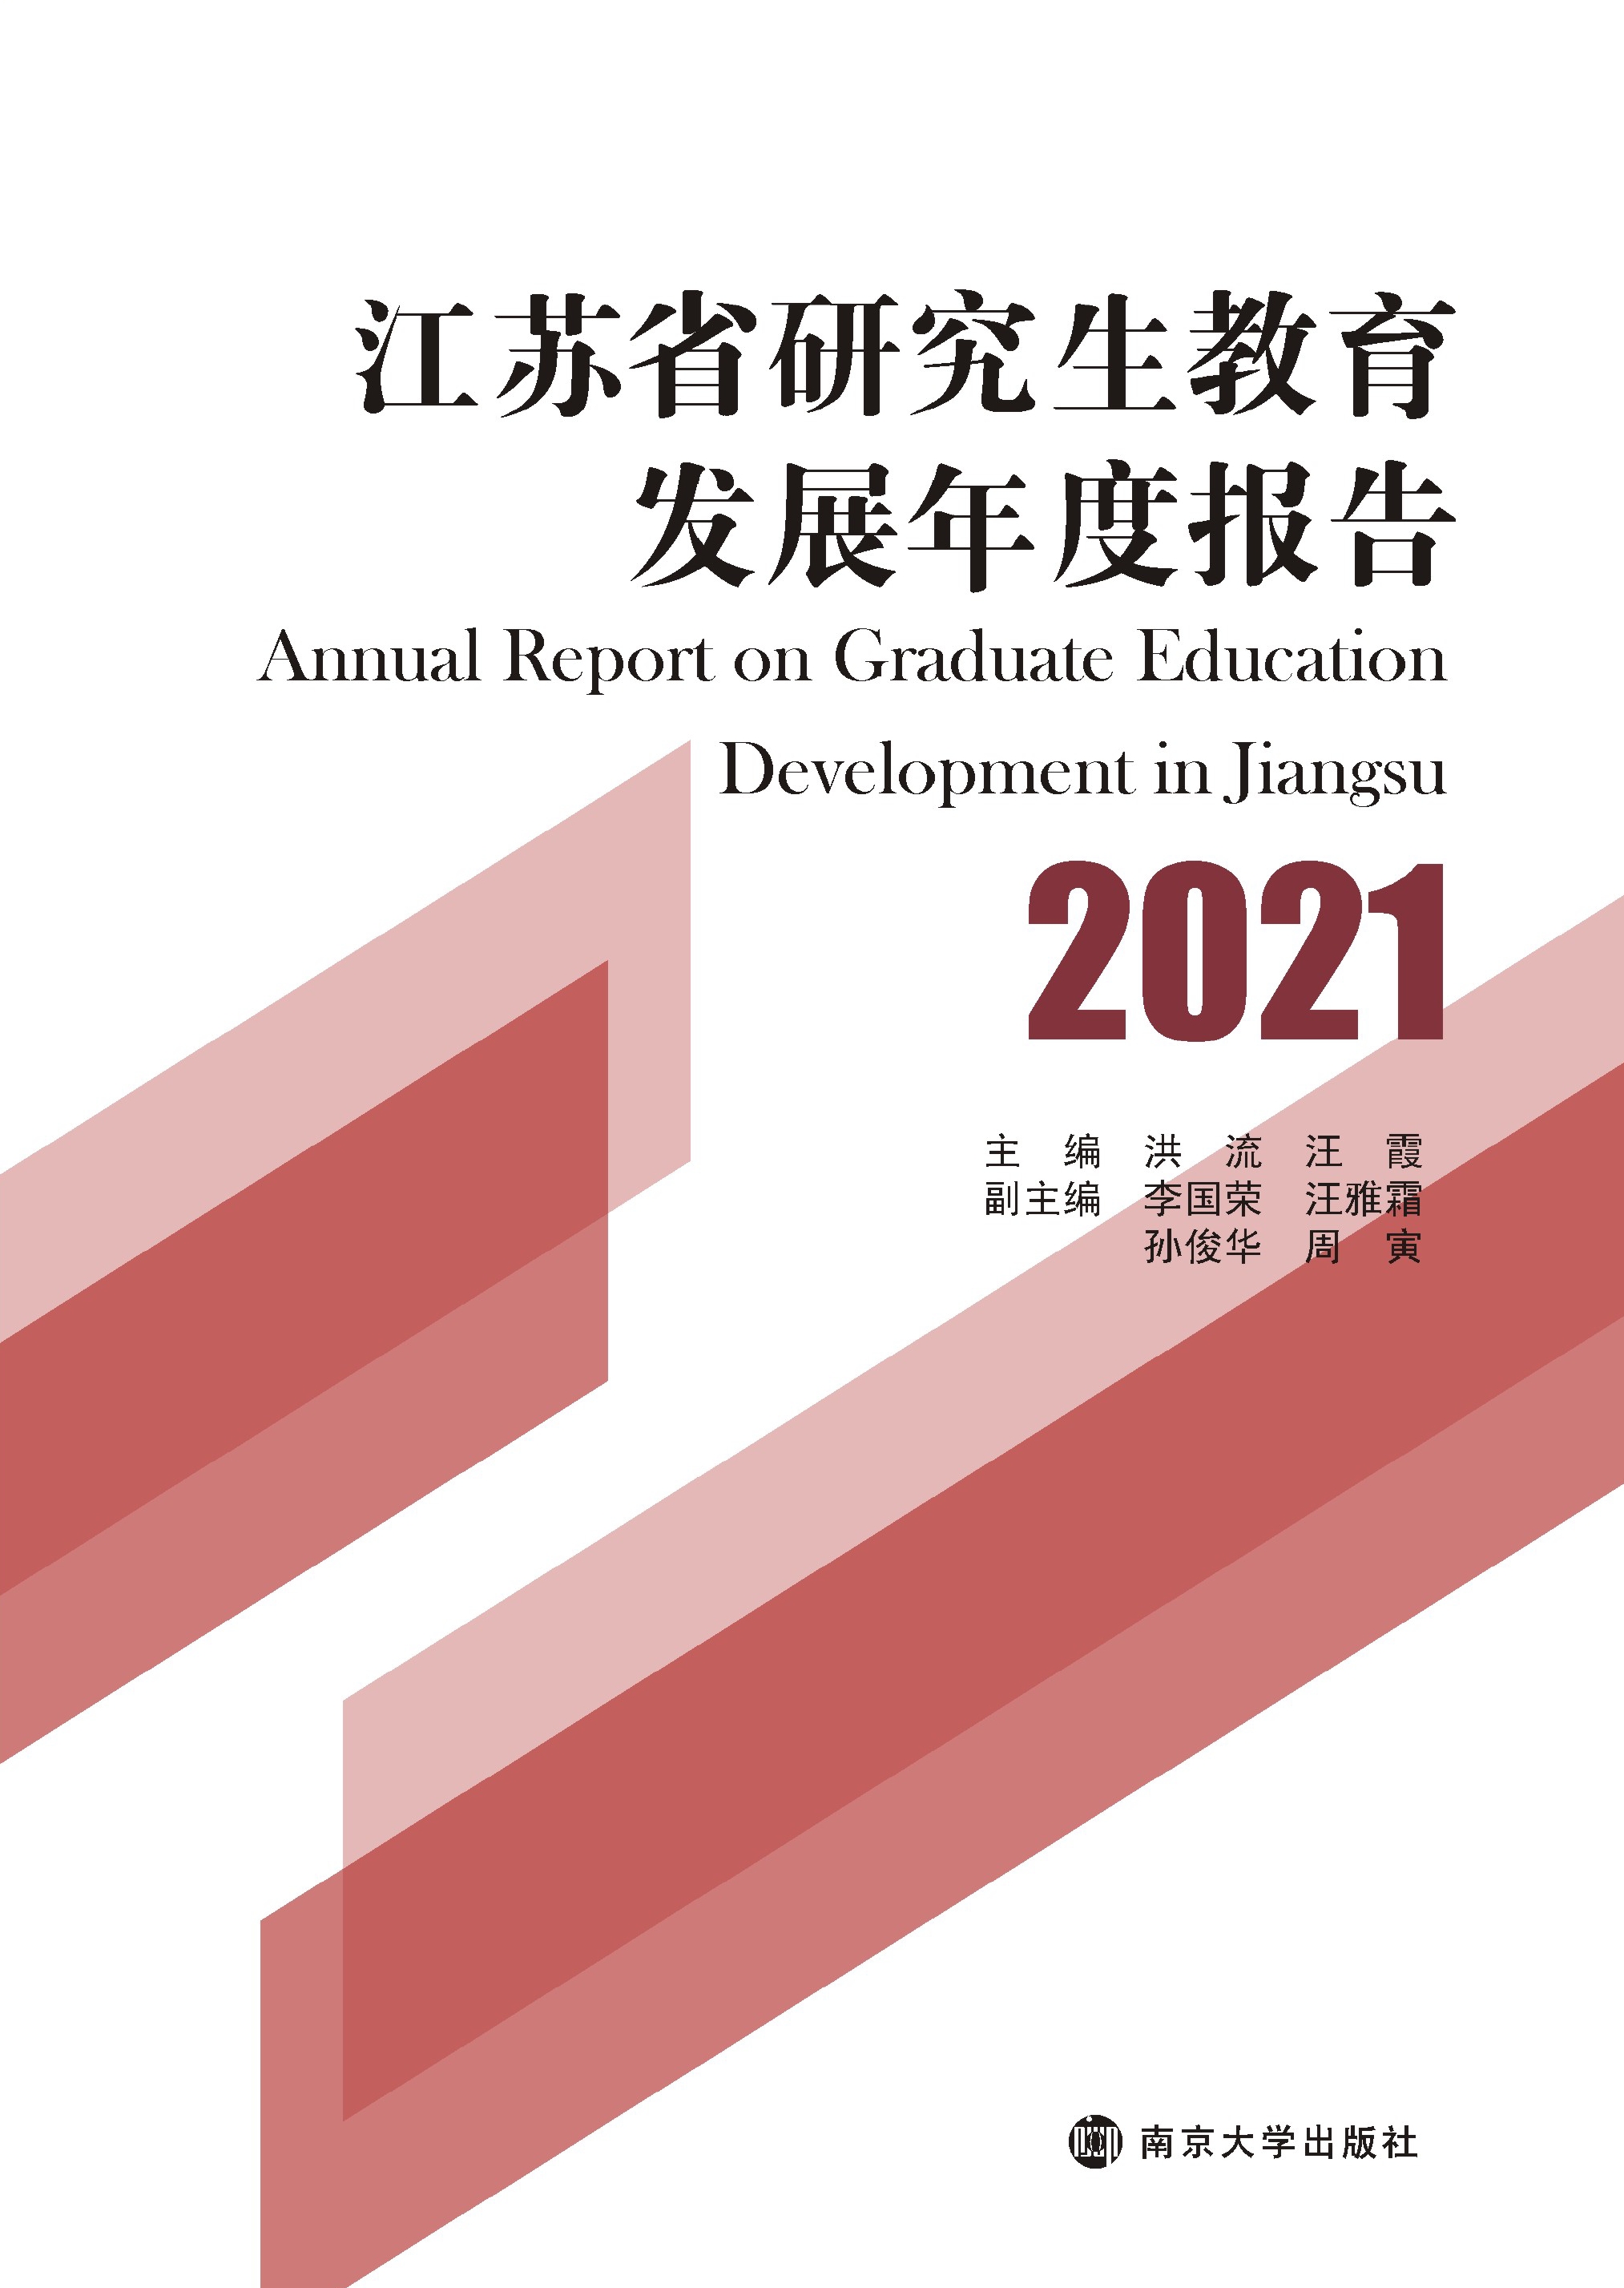 江苏省研究生教育发展年度报告 2021